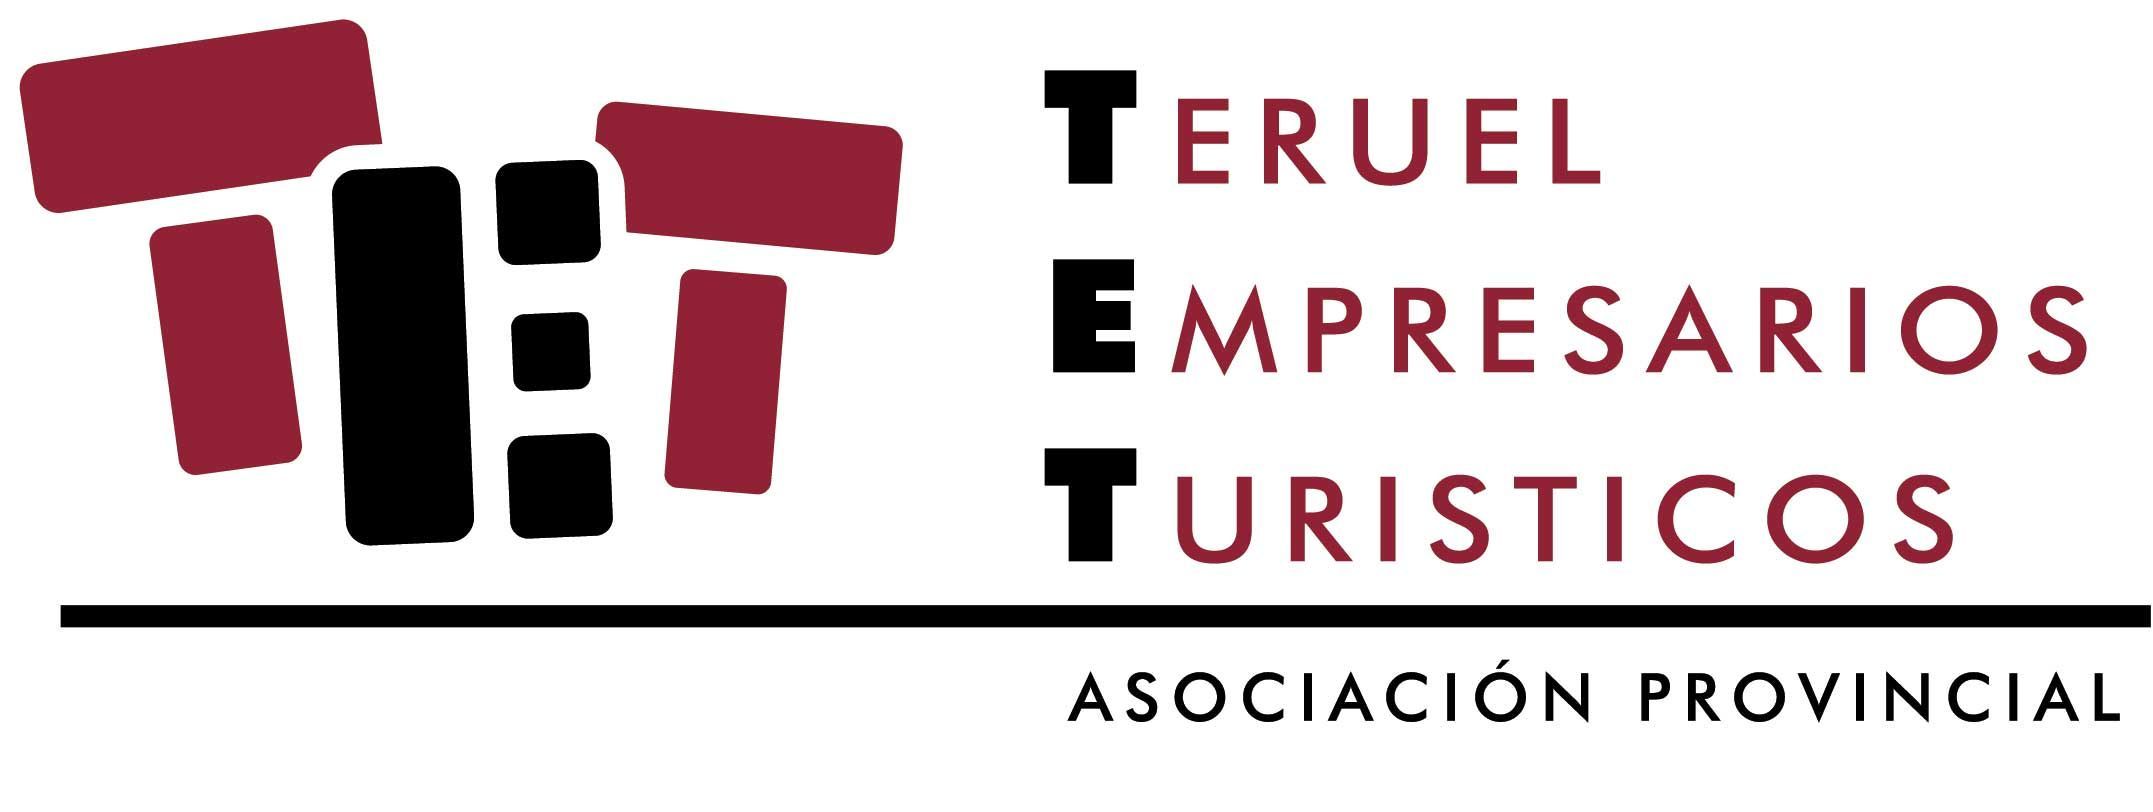 Teruel Empresarios Turisticos